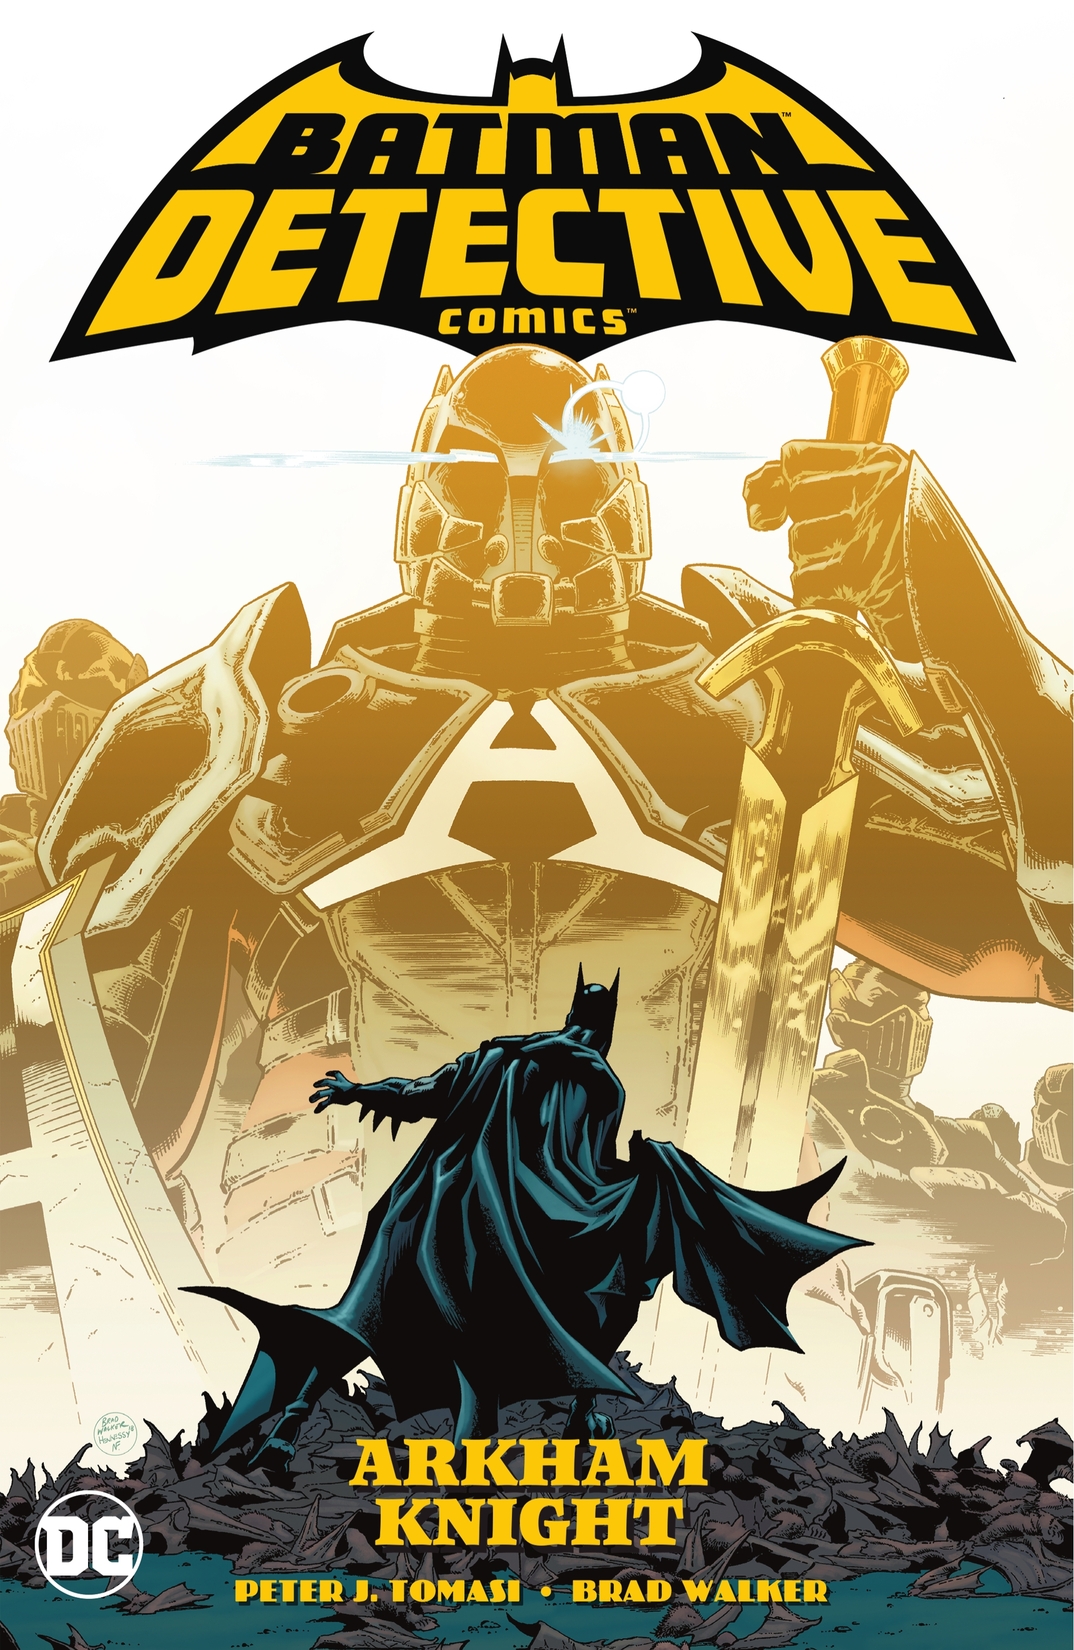 Batman: Detective Comics Vol. 2: Arkham Knight preview images